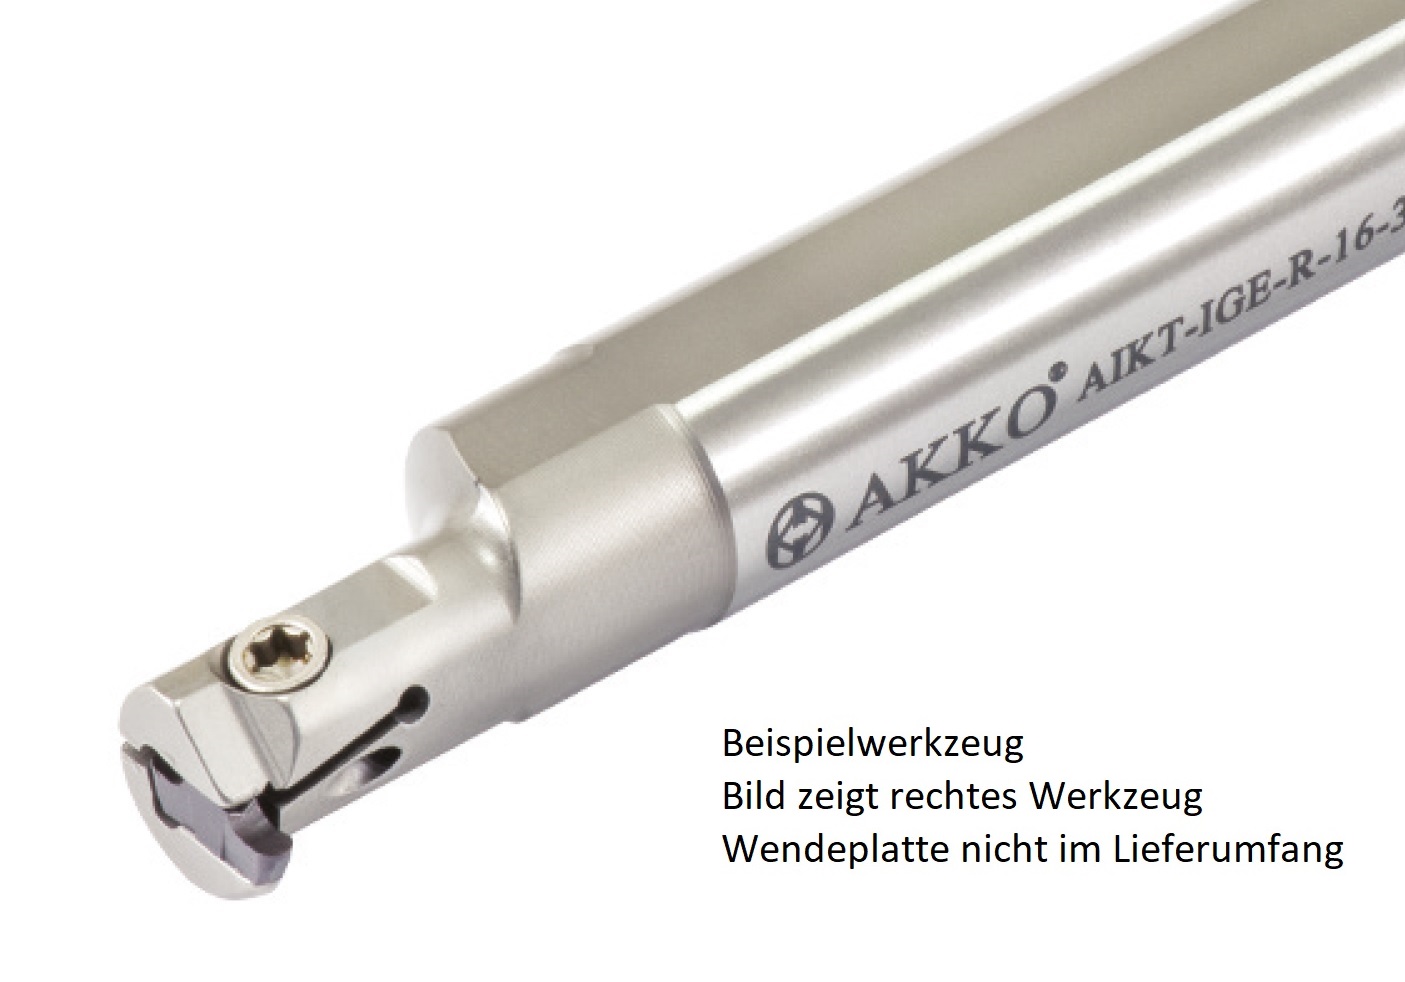 AKKO-Innen-Stechhalter, kompatibel mit Iscar-Stechplatte GEPI-2
Schaft-ø 16, mit Innenkühlung, rechts